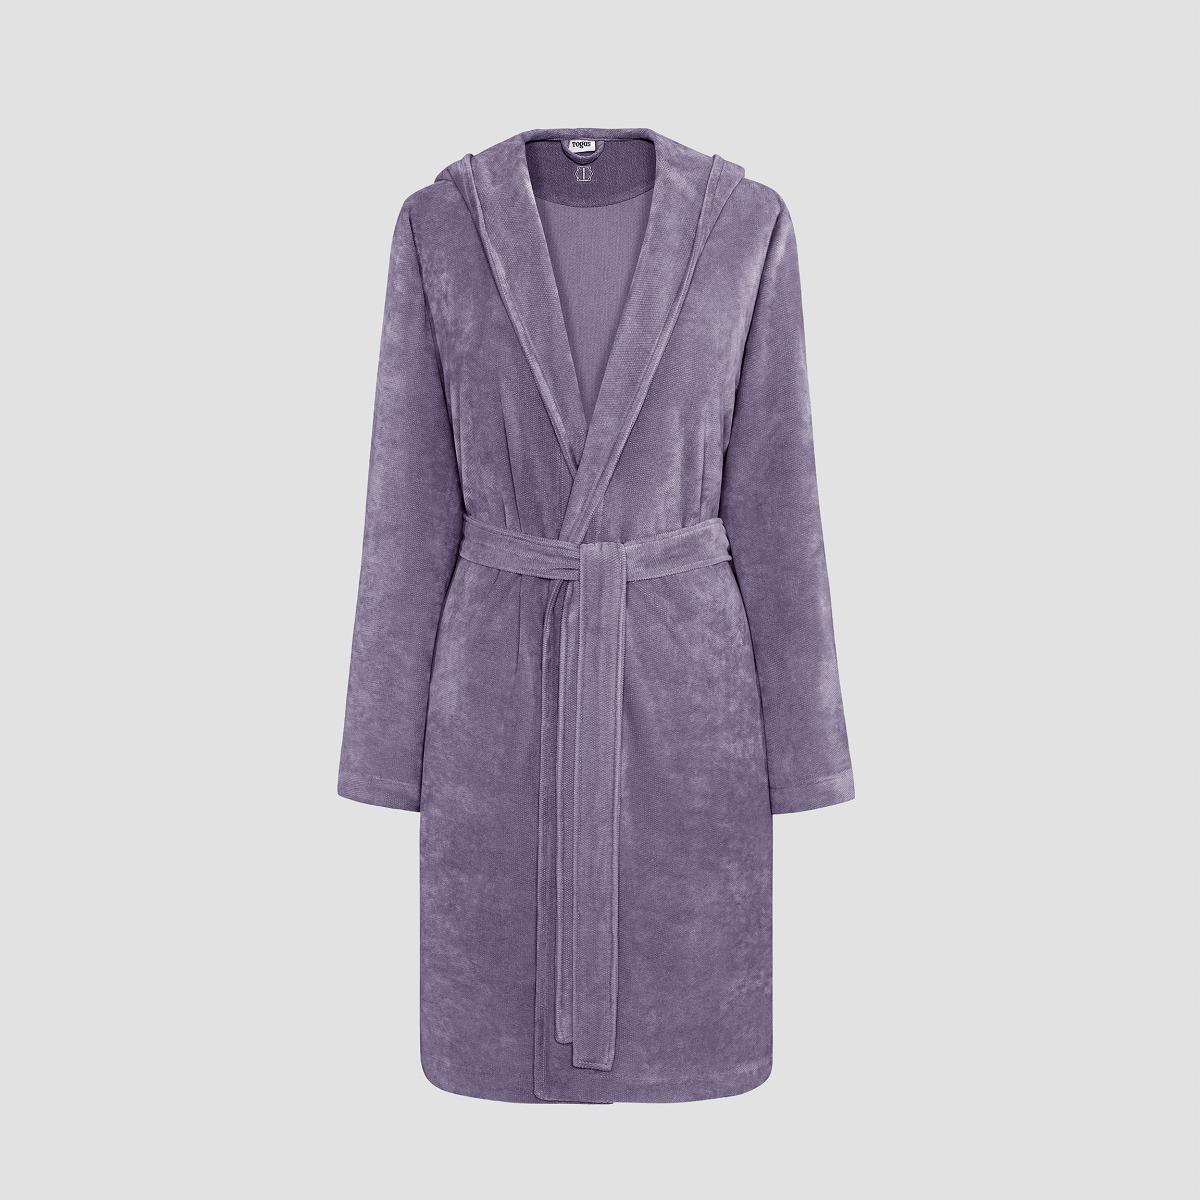 Халат Togas Талия фиолетовый XL(50) жен халат зелма фиолетовый р 60